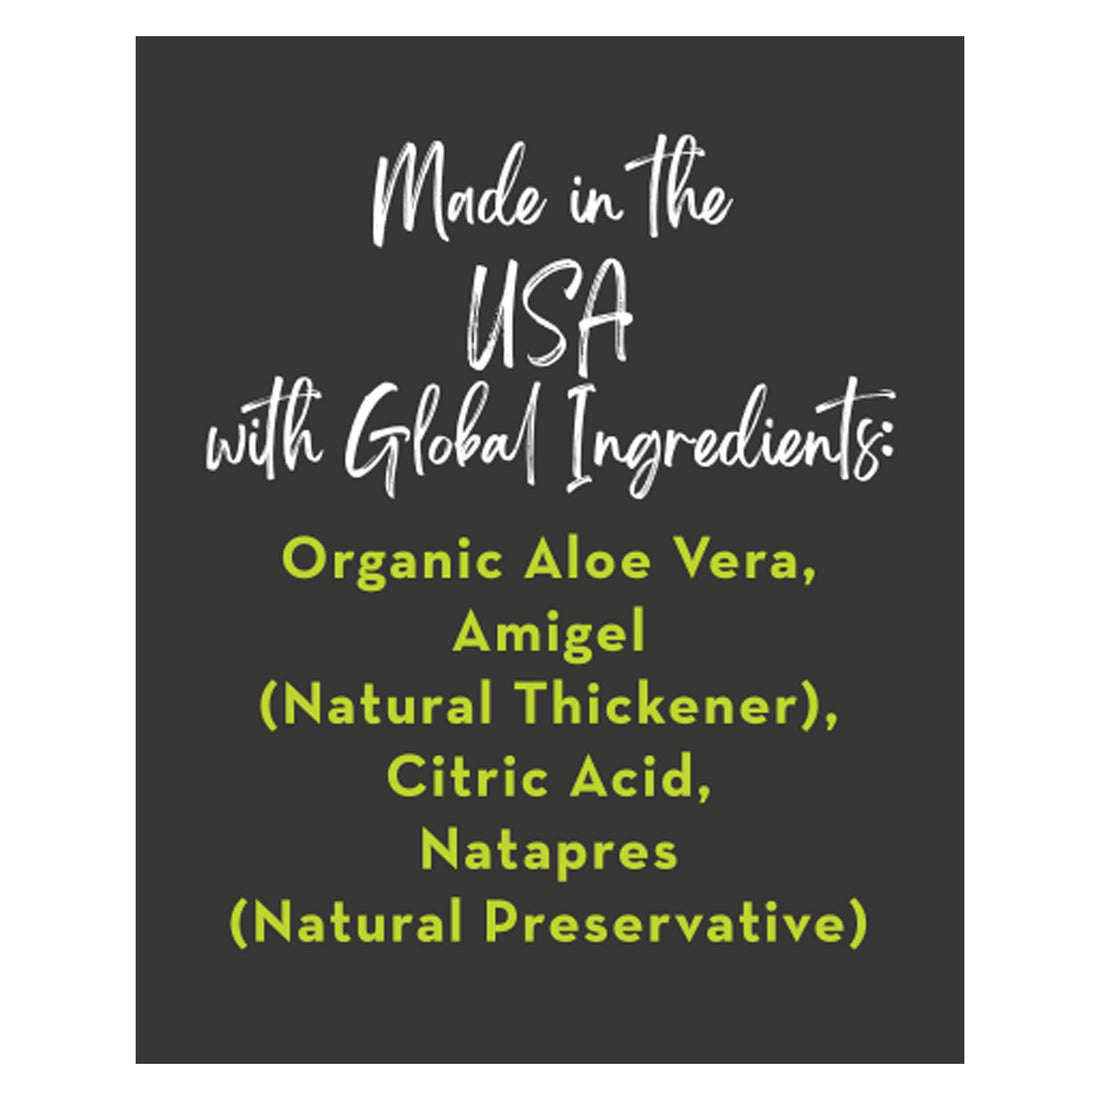 Aloe Vera Gelé | Organic - 8 Fl oz. Oral Supplements Desert Harvest 